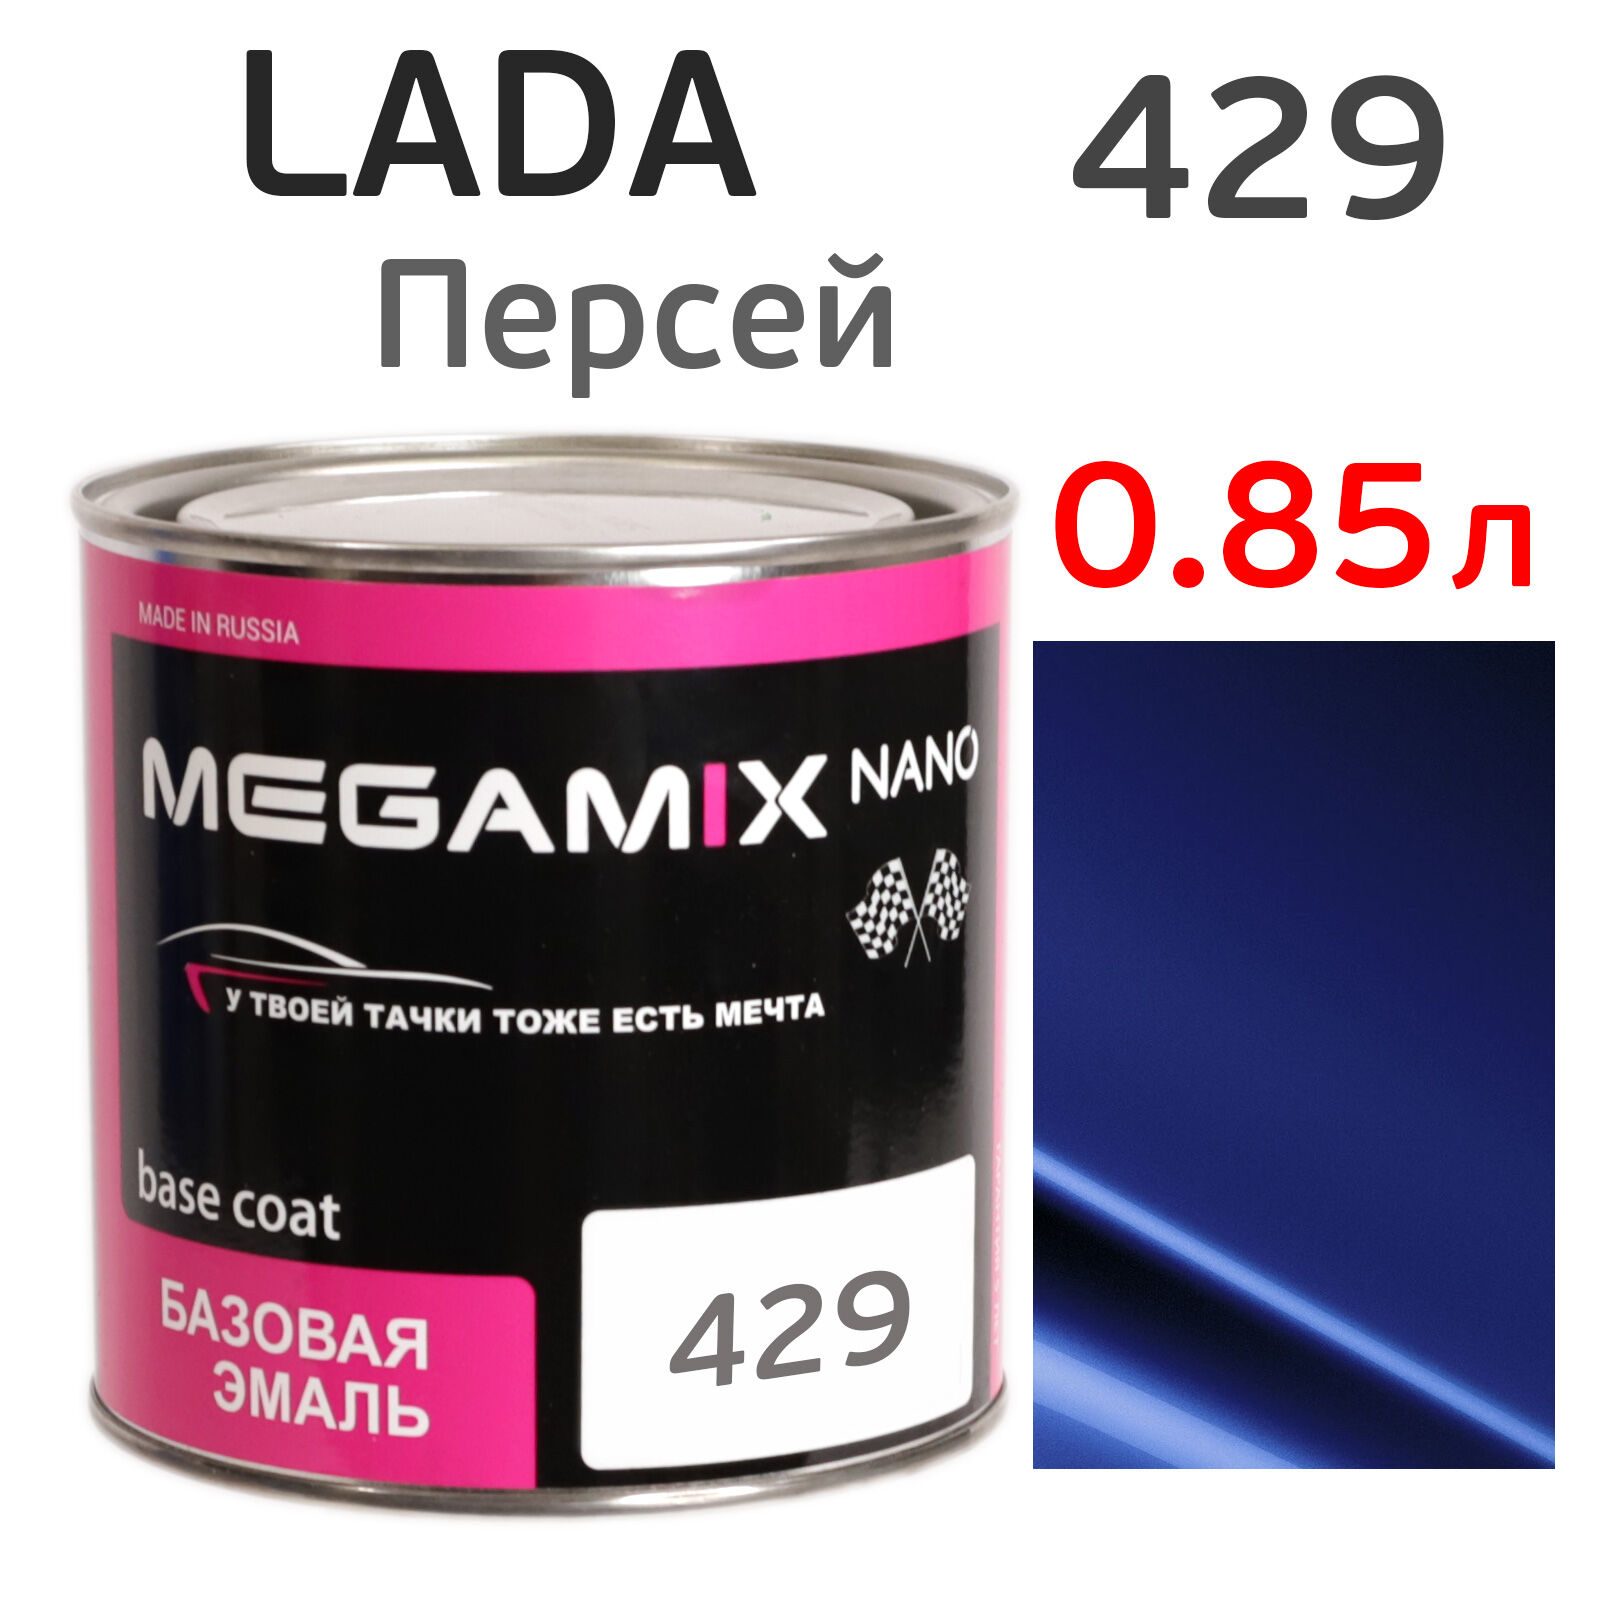 Автоэмаль MegaMIX (0.85л) Lada 429 Персей, металлик, базисная эмаль под лак